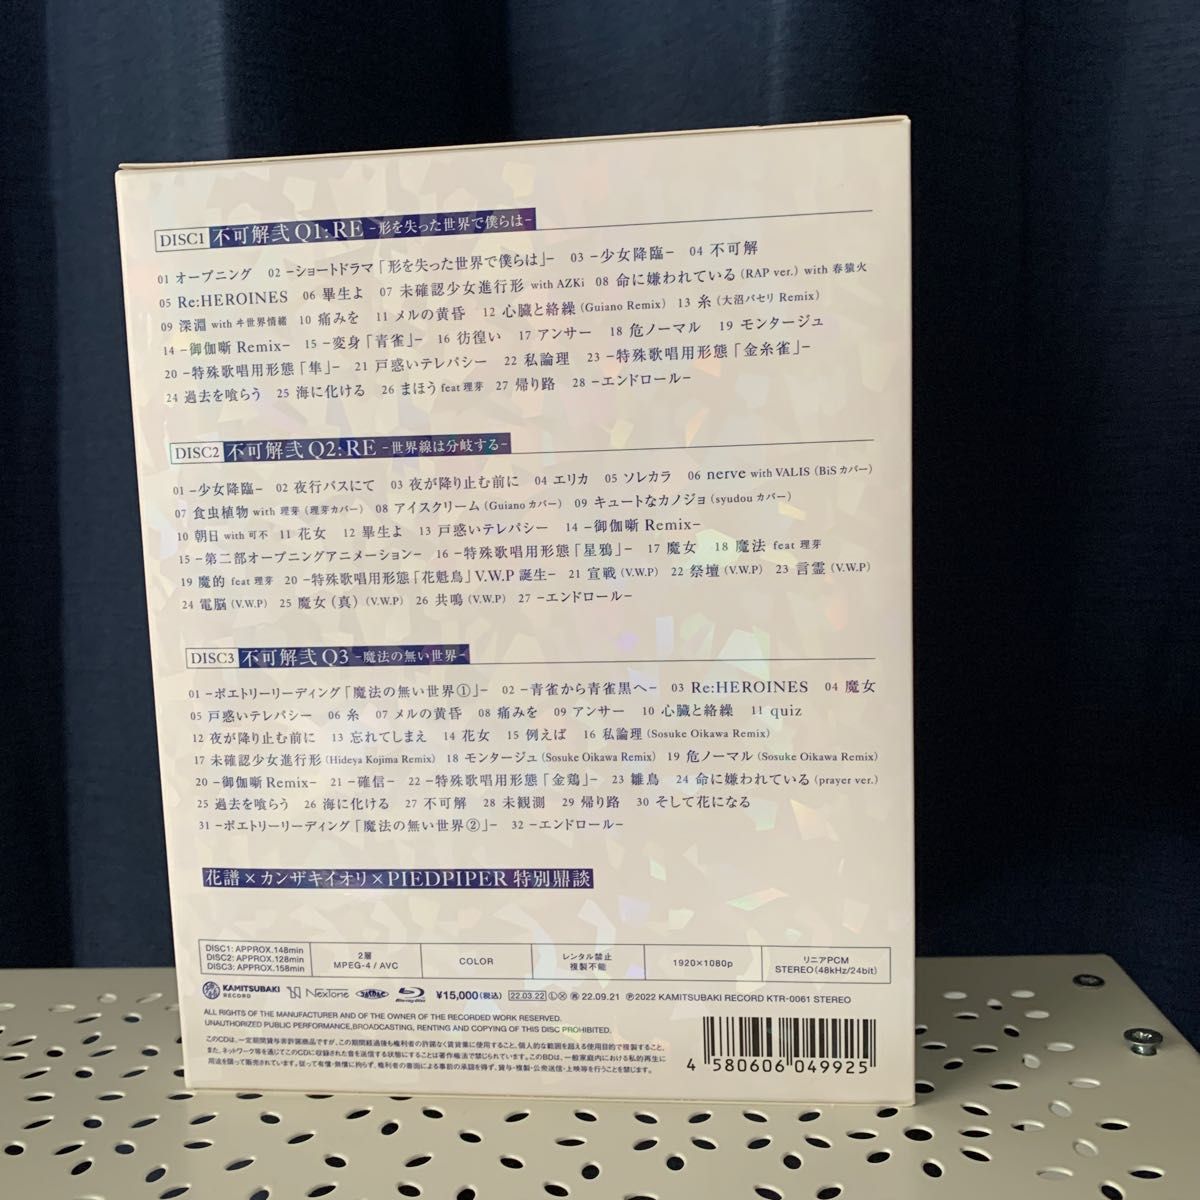 花譜】Live Blu-ray 不可解弐REBUILDING 3 公演スペシャルパッケージ